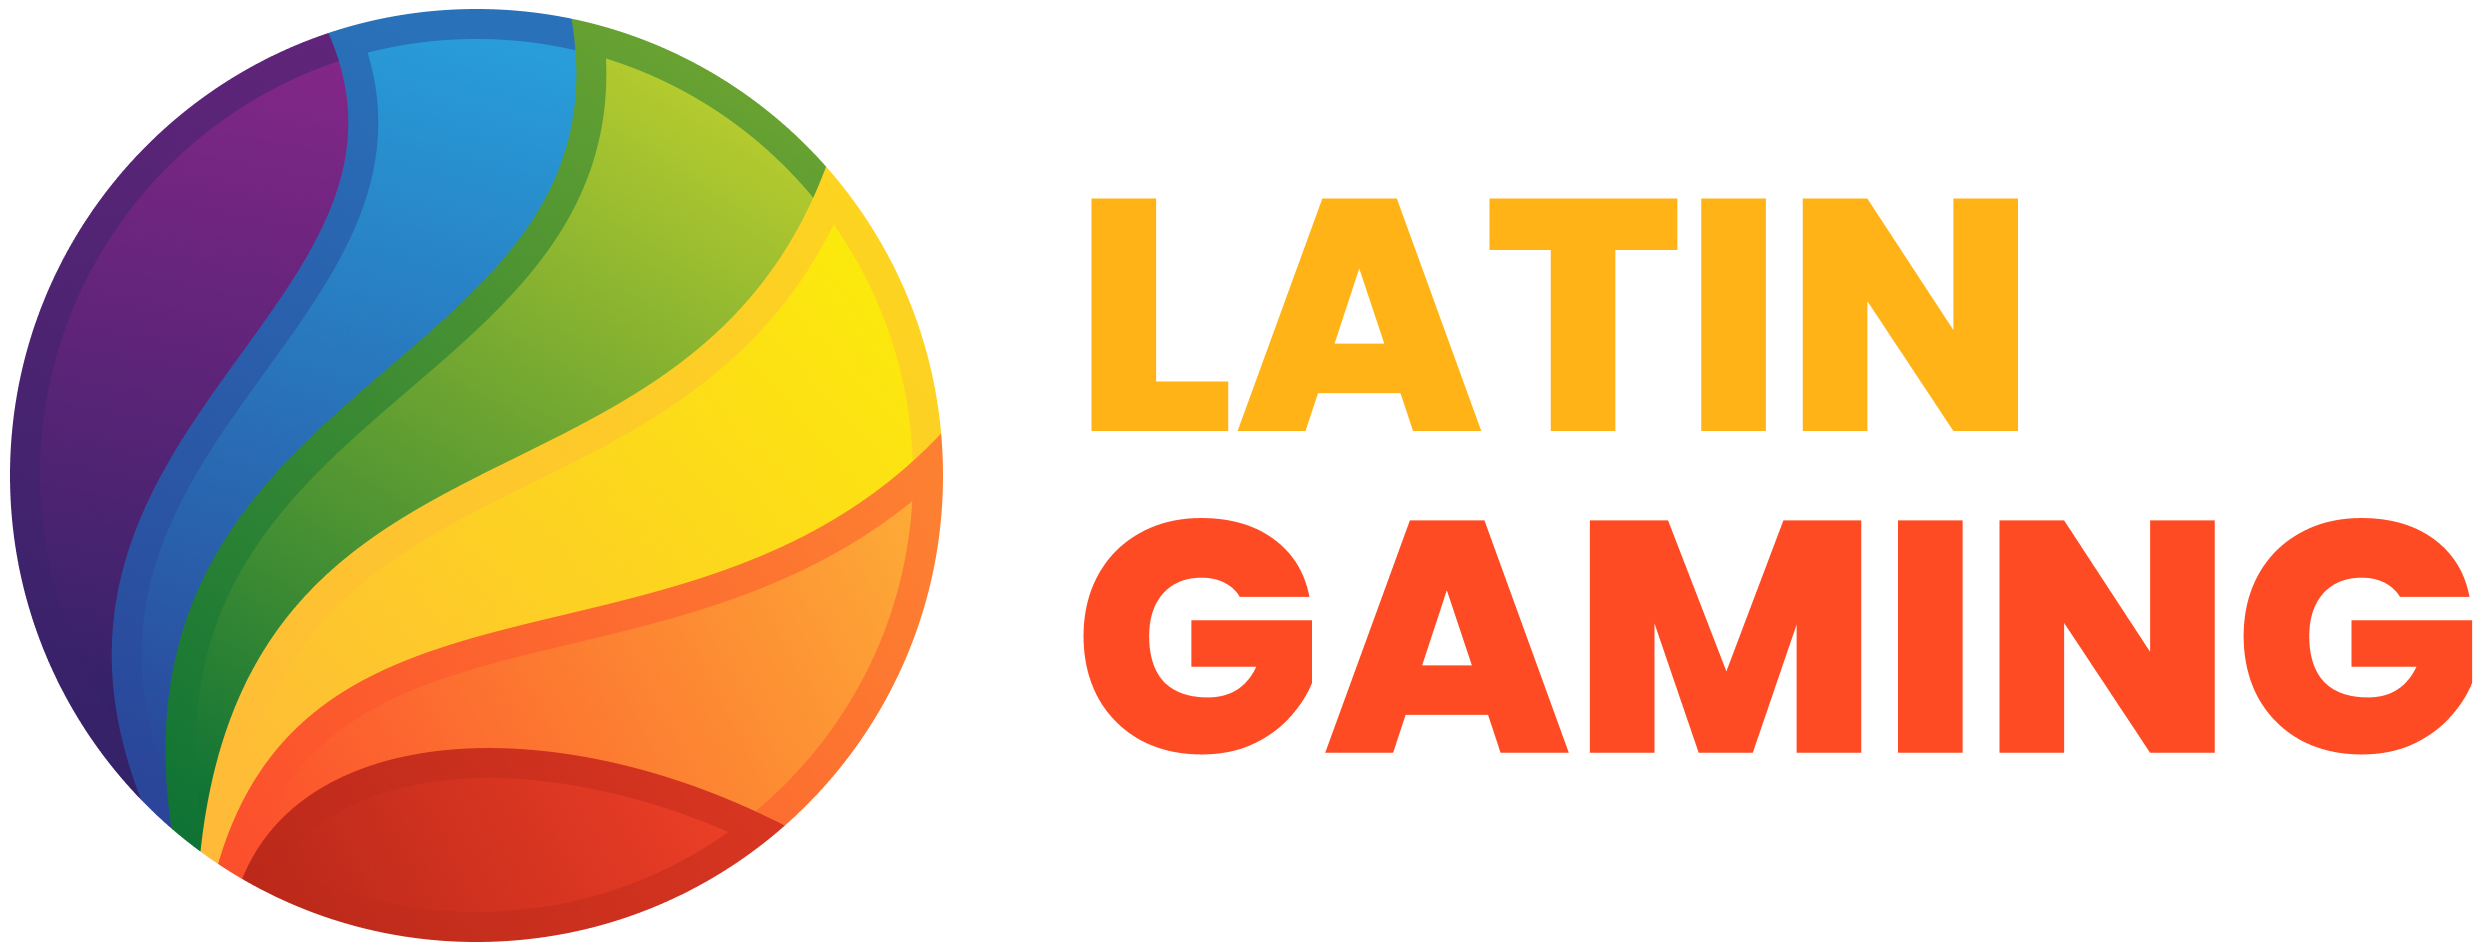 Latin Gaming